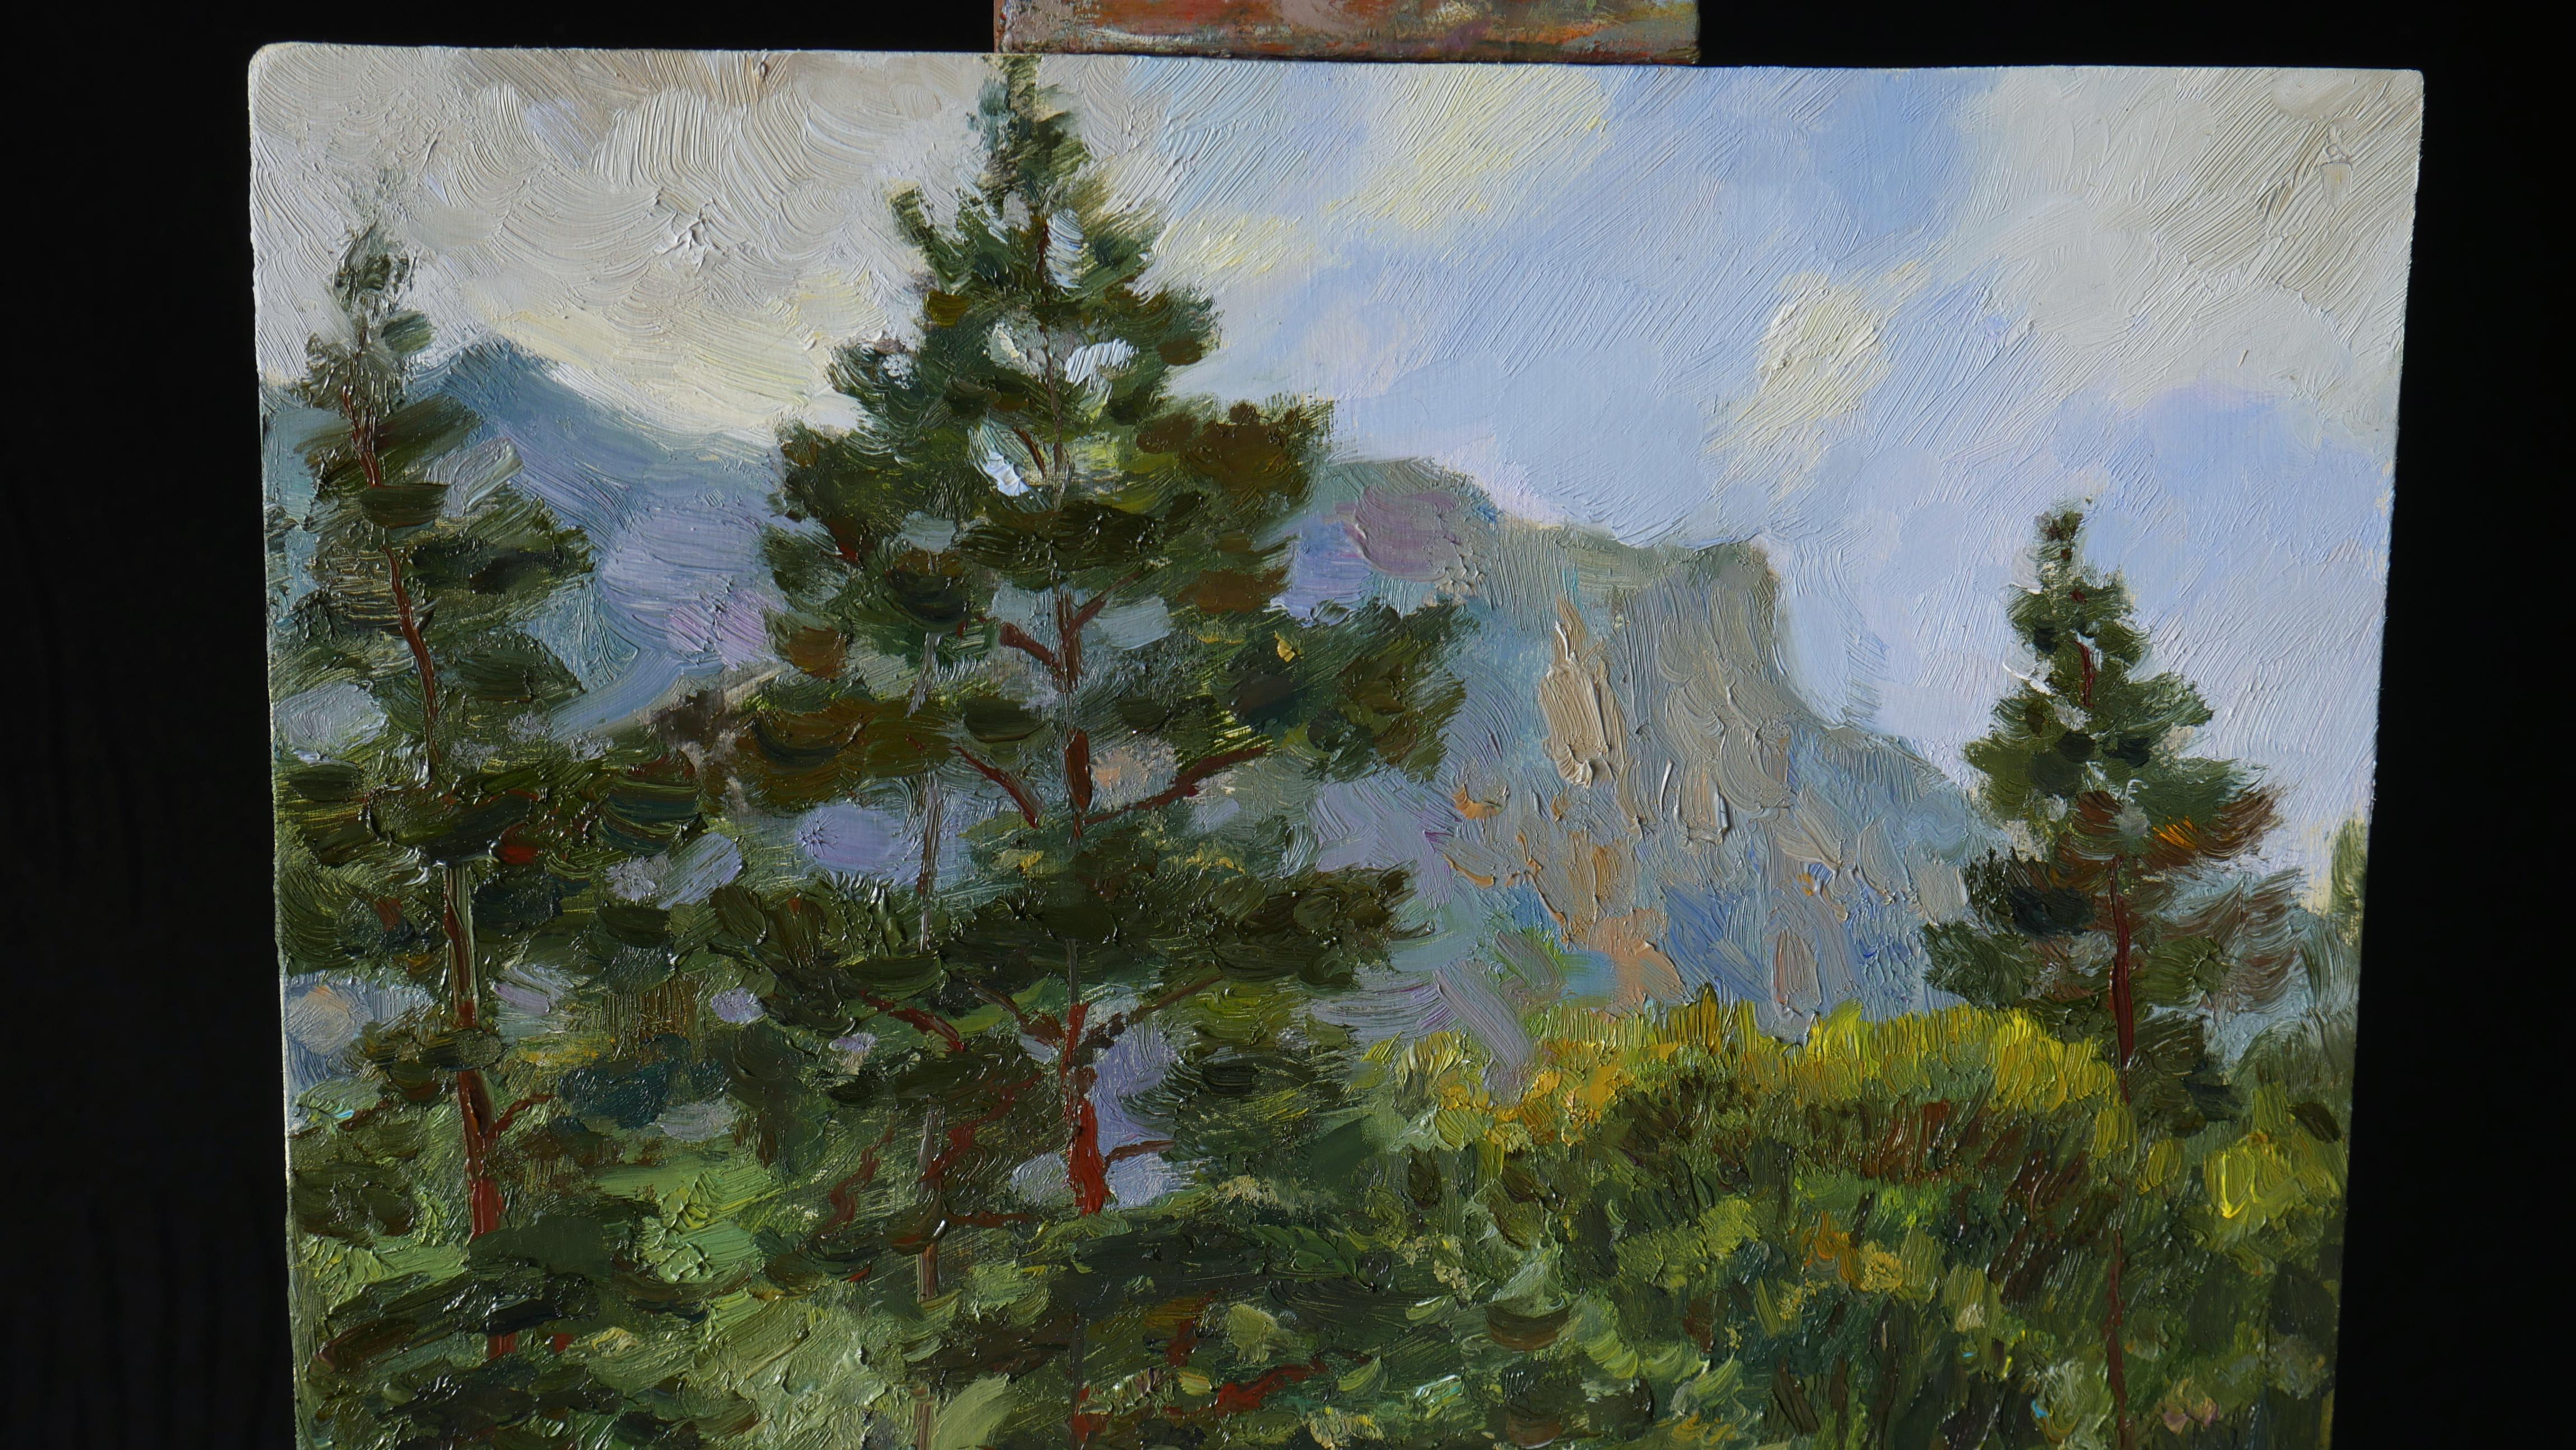 The evening in the mountains - peinture de montagne - Réalisme Painting par Nikolay Dmitriev